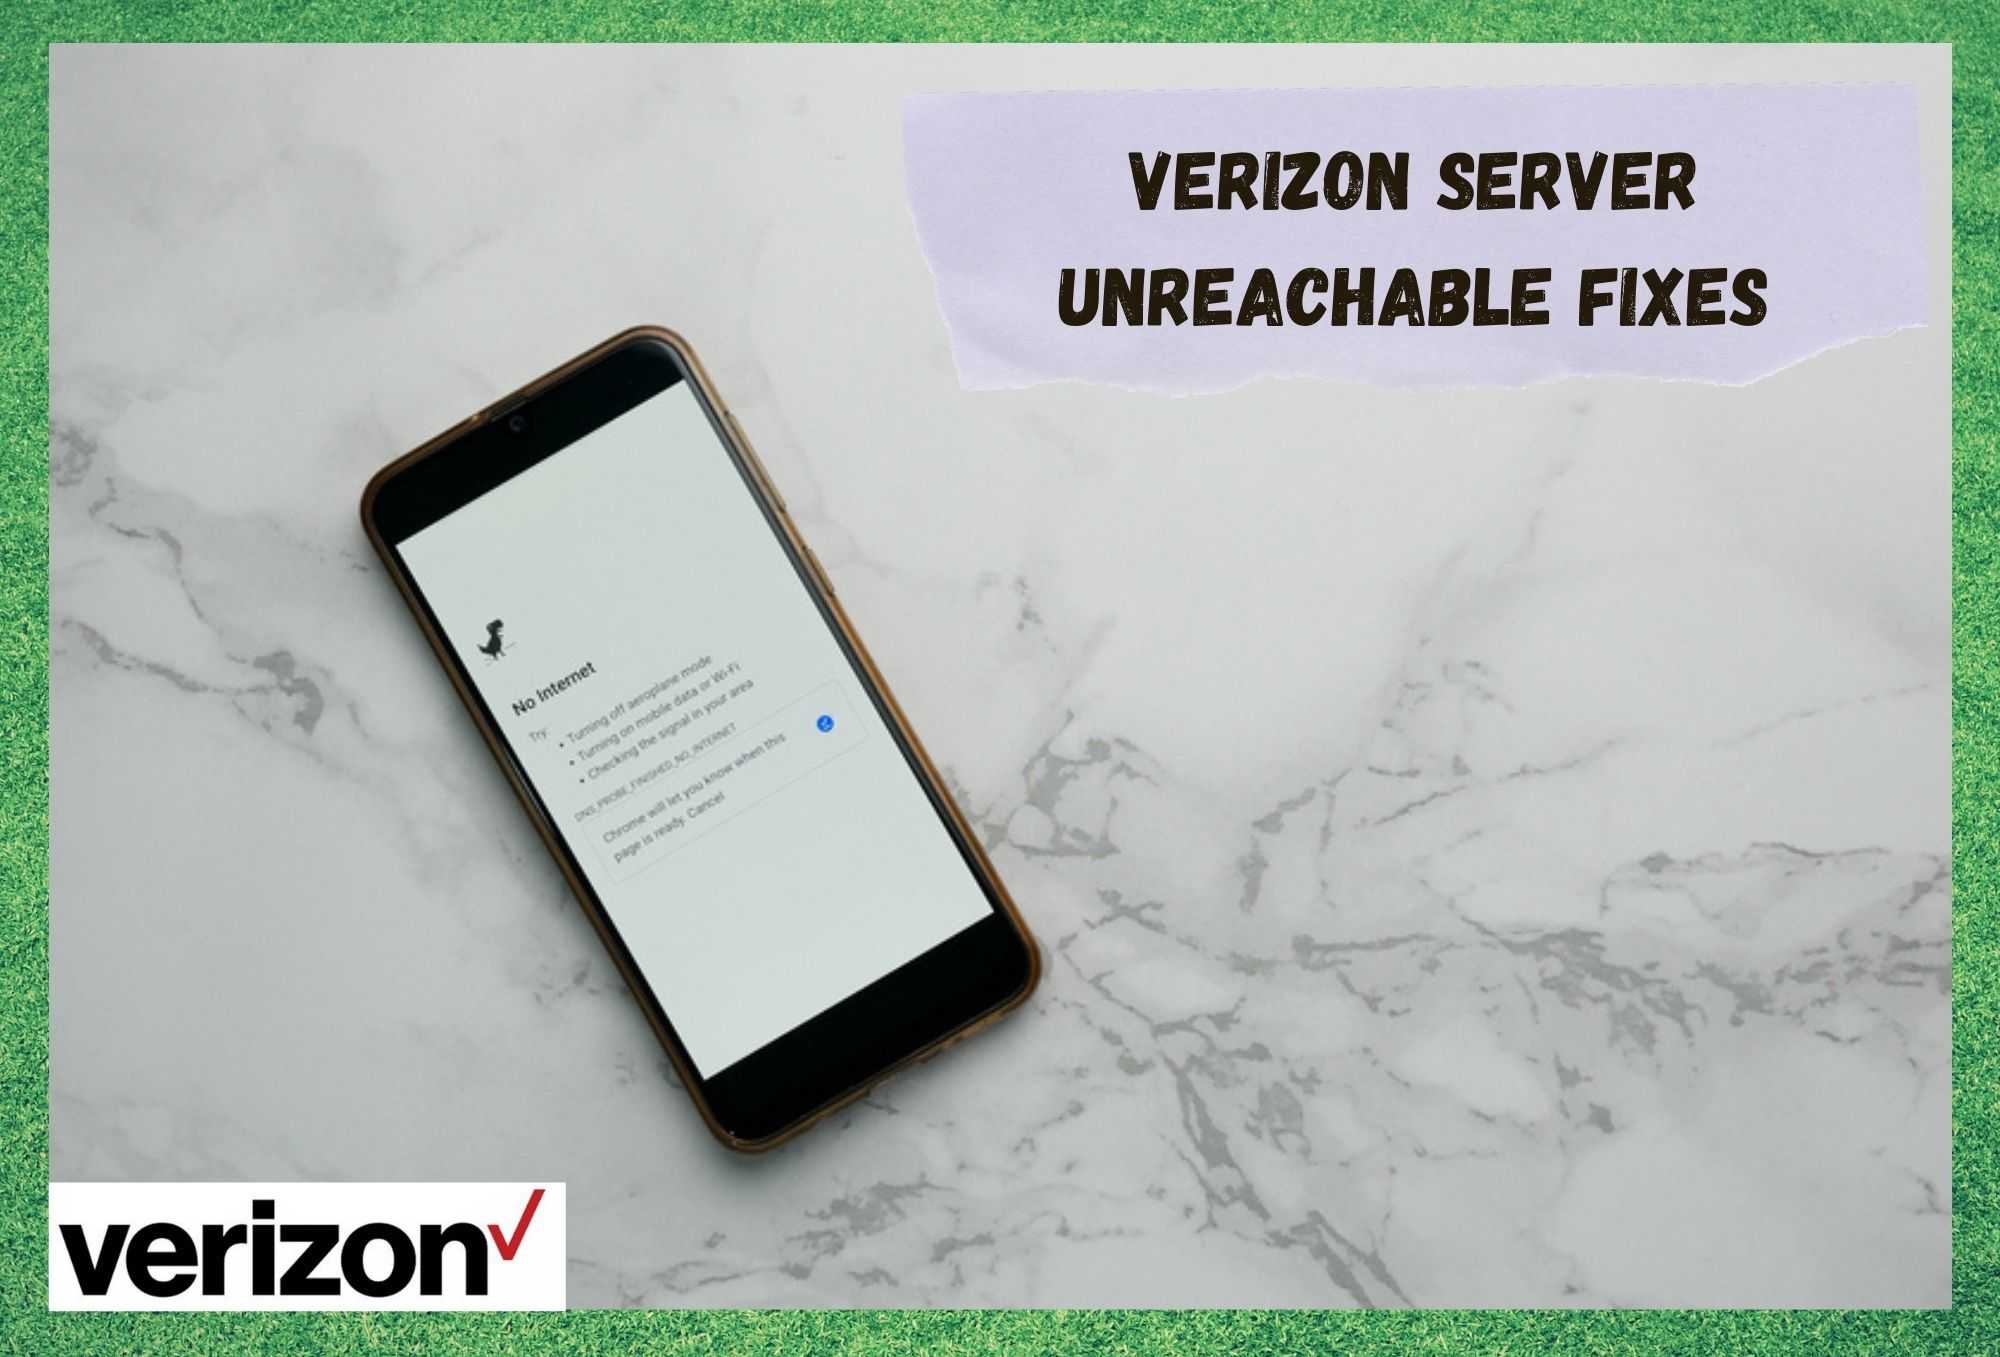 Server Verizon Tidak Dapat Dijangkau: 4 Cara Untuk Memperbaiki